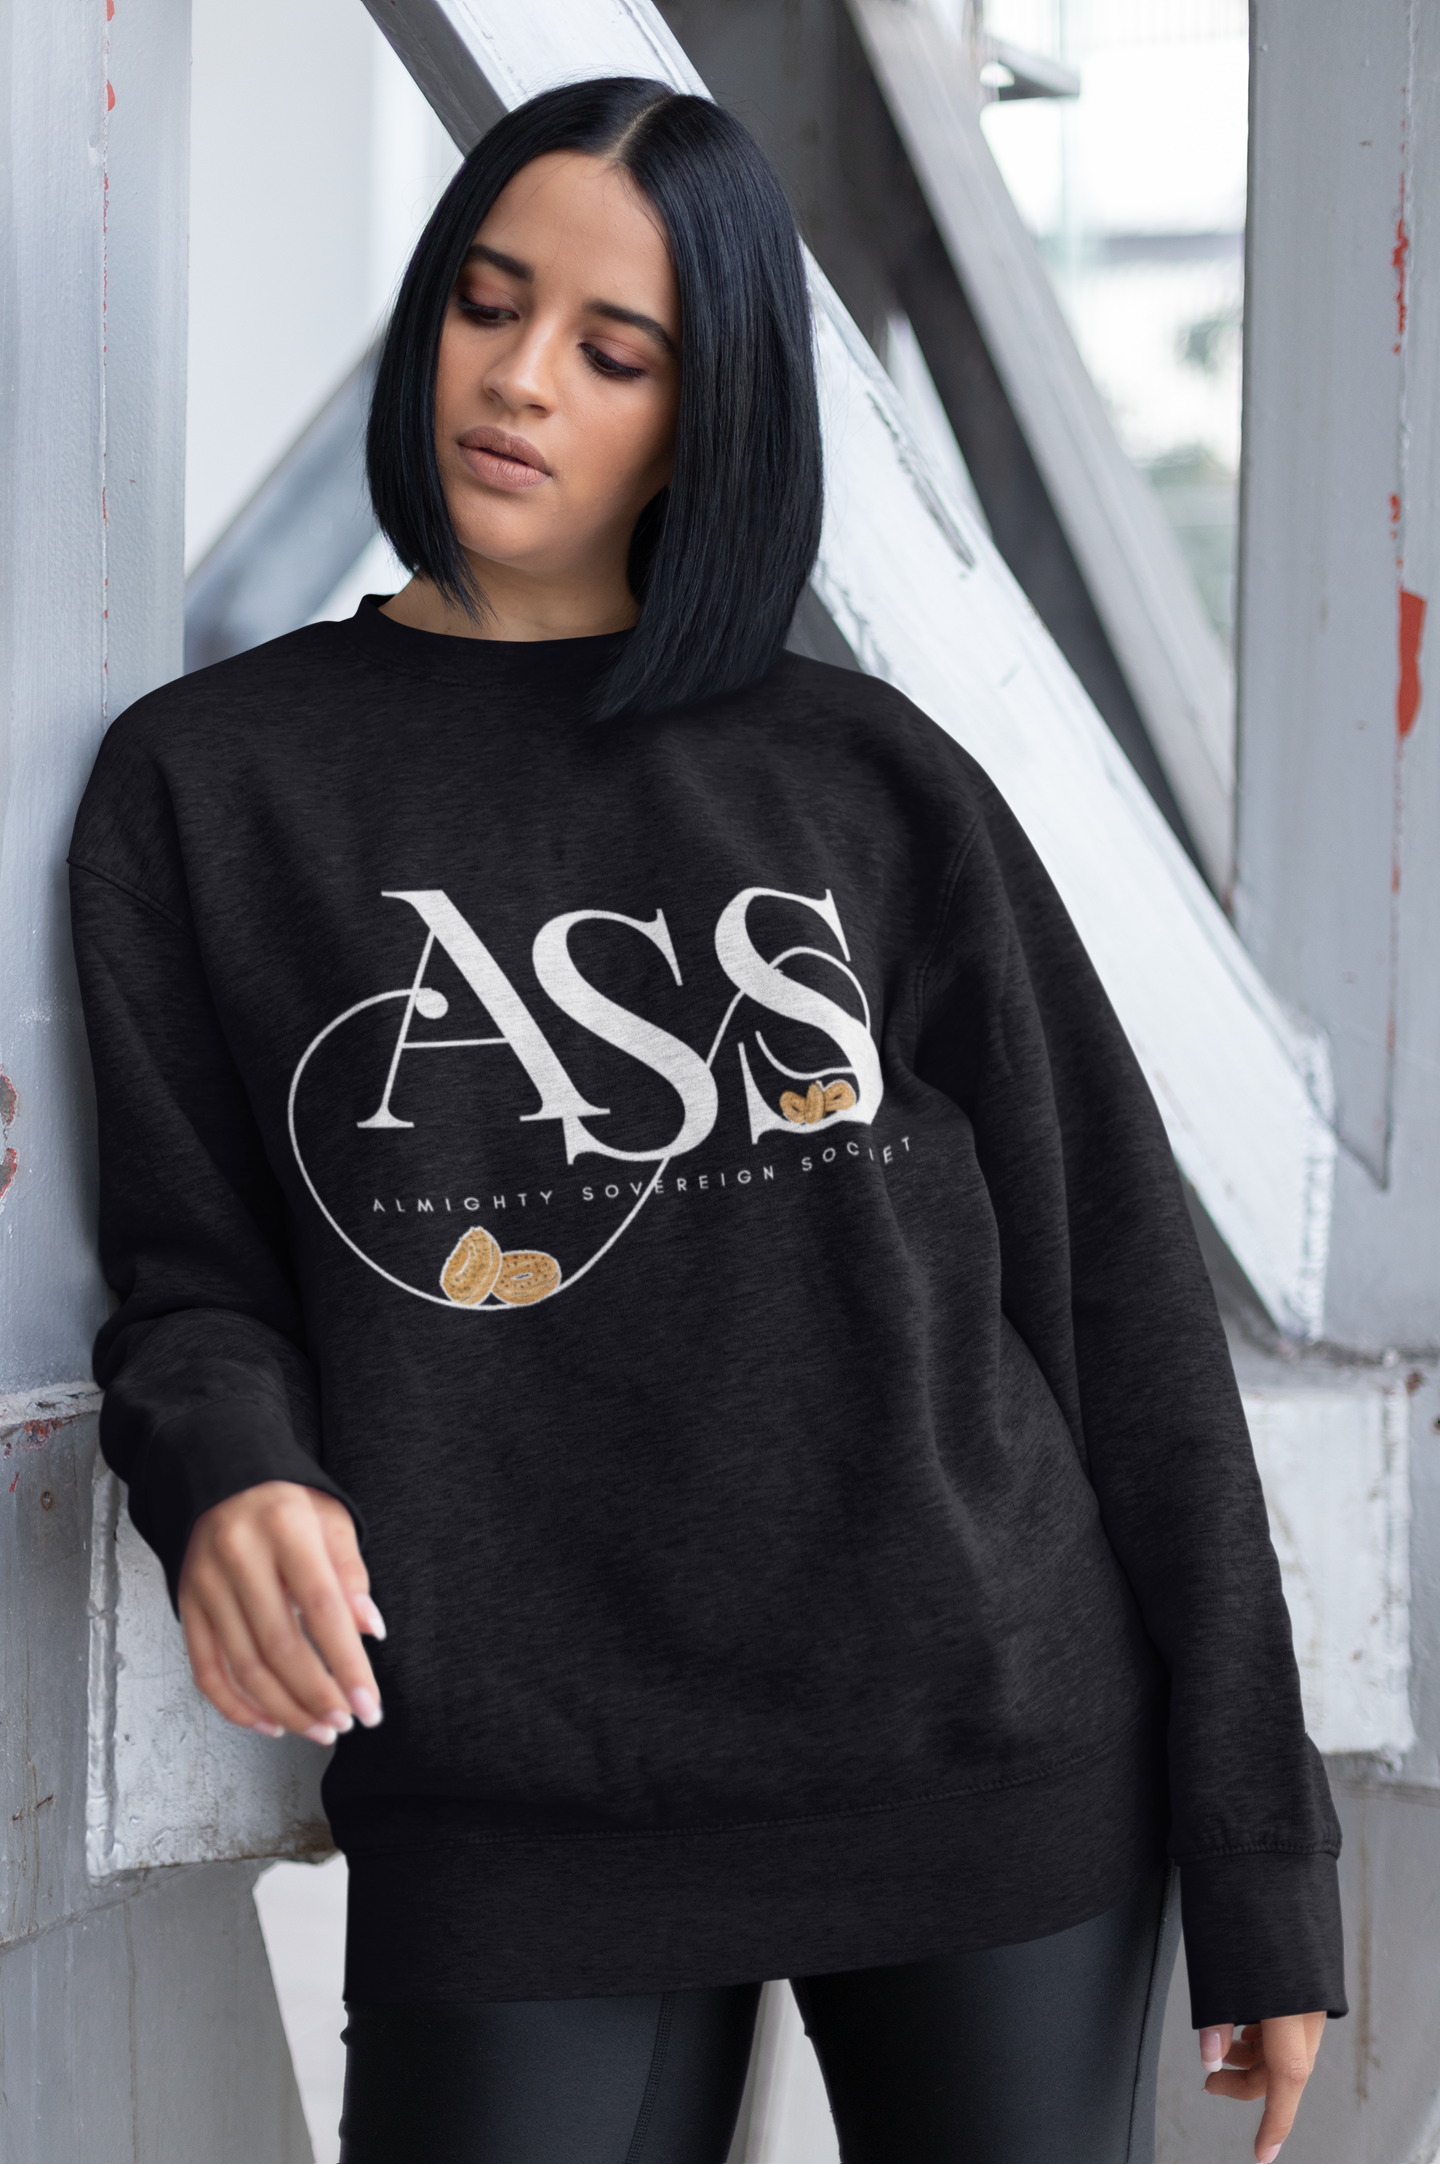 ASS - Geraldine - Sweatshirt -Zodiac Academy - Caroline Peckham & Susanne Valenti Merchandise